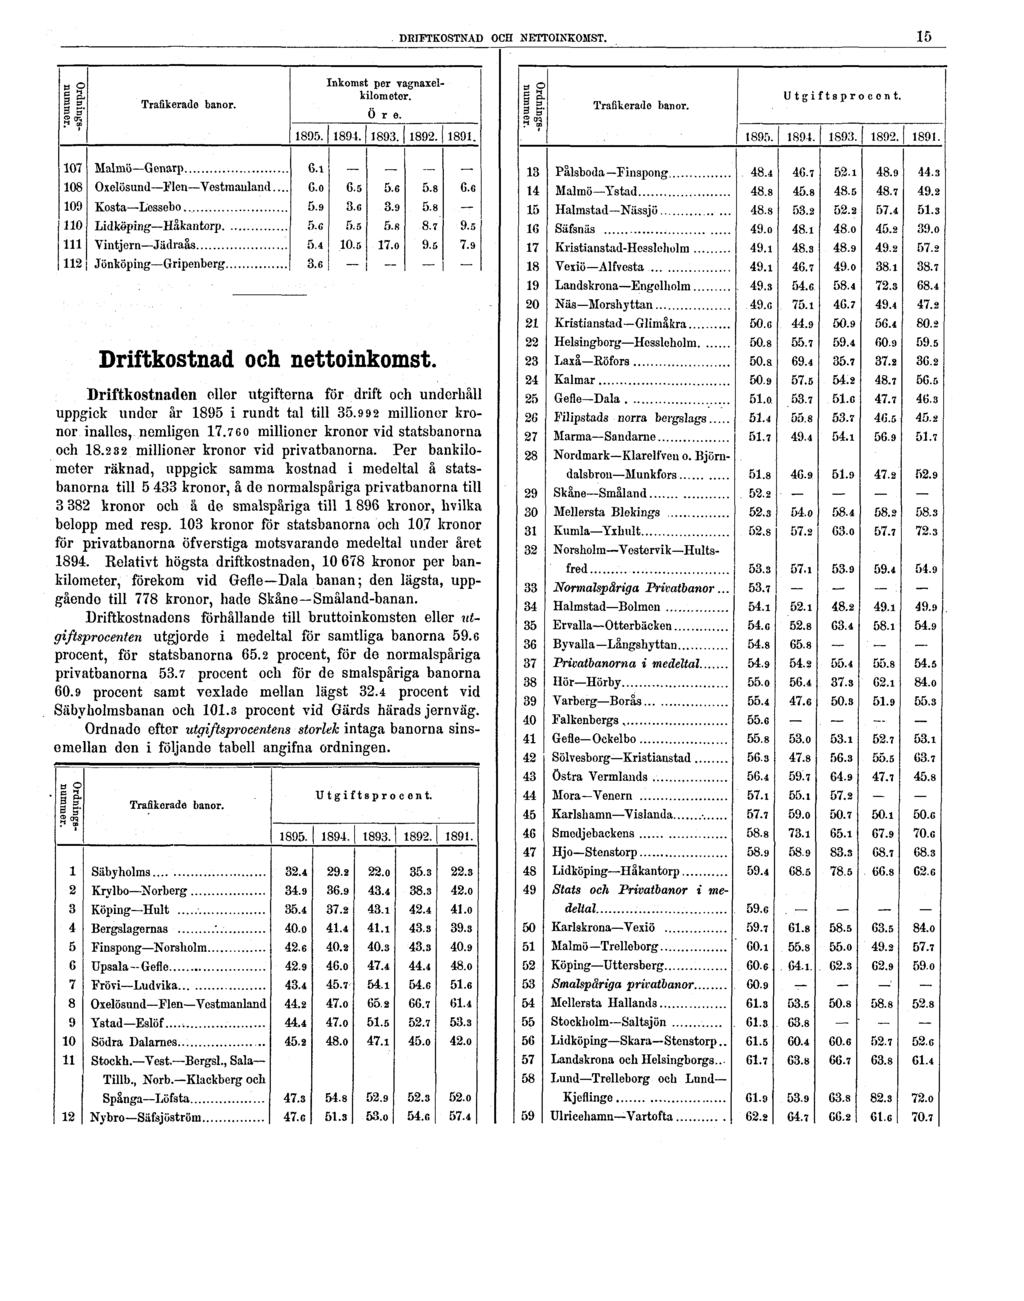 DRIFTKOSTNAD OCH NETTOINKOMST. 15 Driftkostnad och nettoinkomst. Driftkostnaden eller utgifterna för drift och underhåll uppgick under år 1895 i rundt tal till 35.